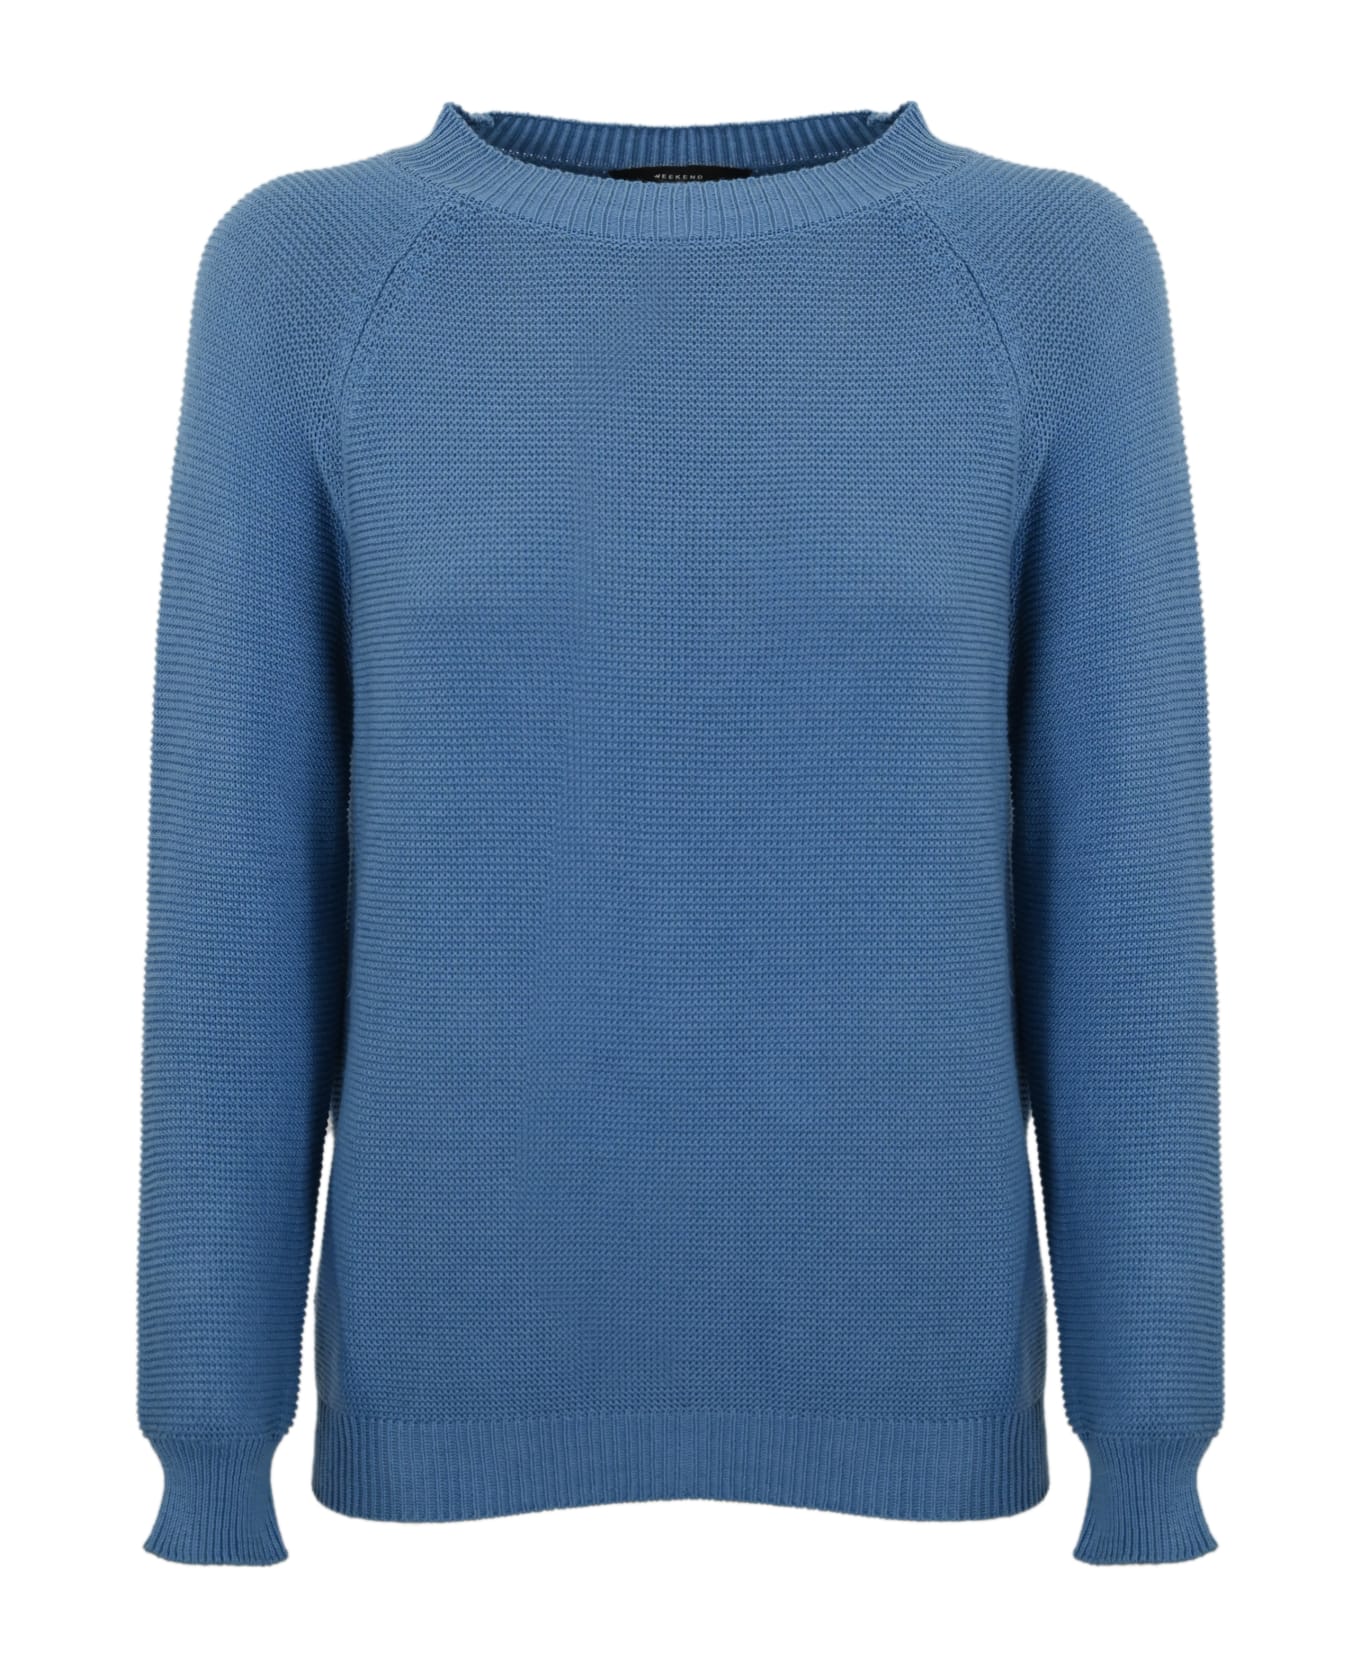 Weekend Max Mara 'linz' Cotton Sweater - Light blue